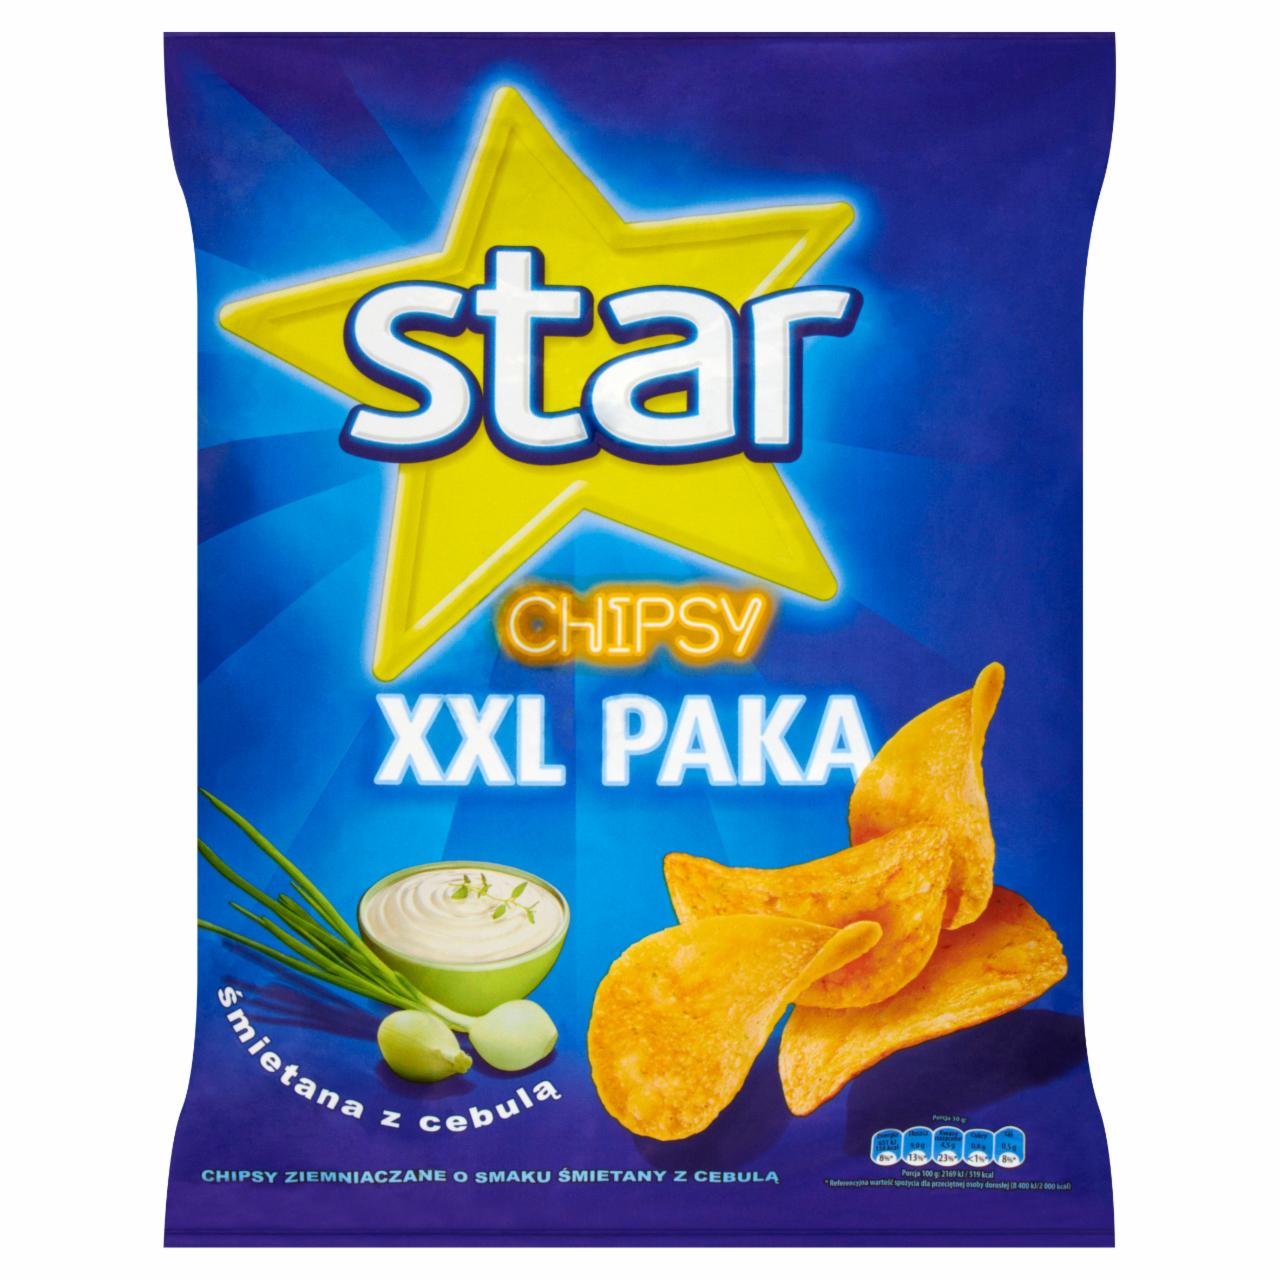 Zdjęcia - Star Chipsy śmietana z cebulą 290 g